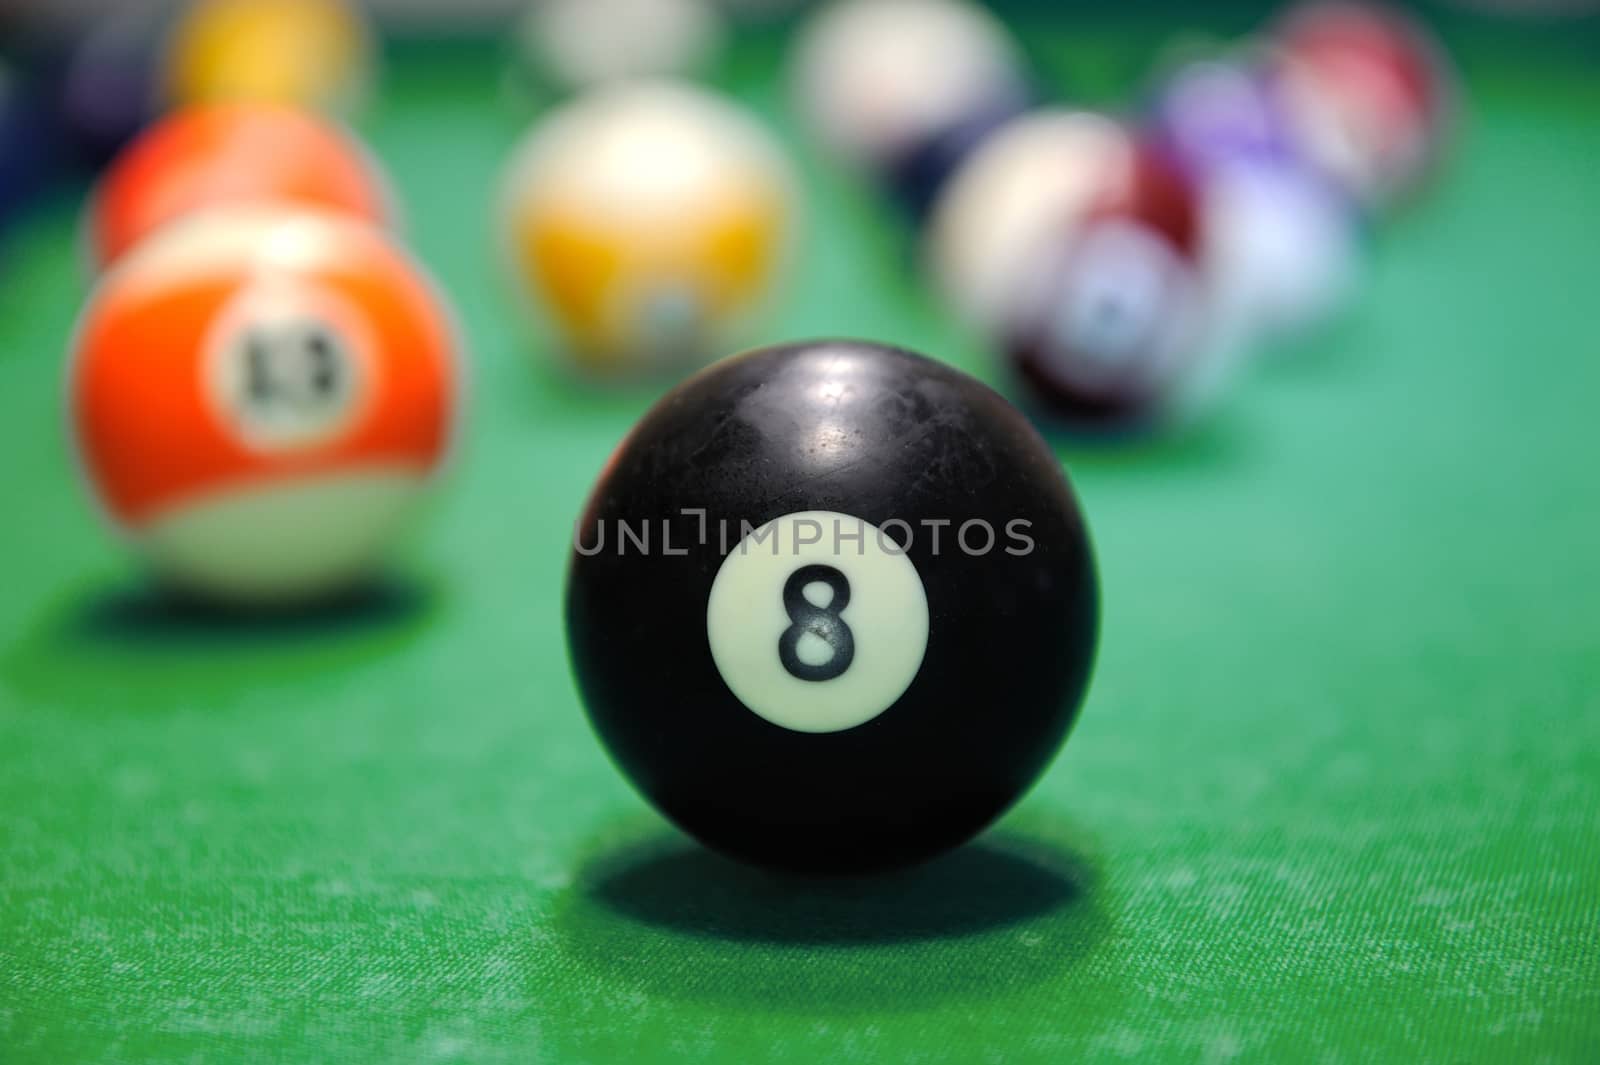 Billiard balls in a pool table by byrdyak